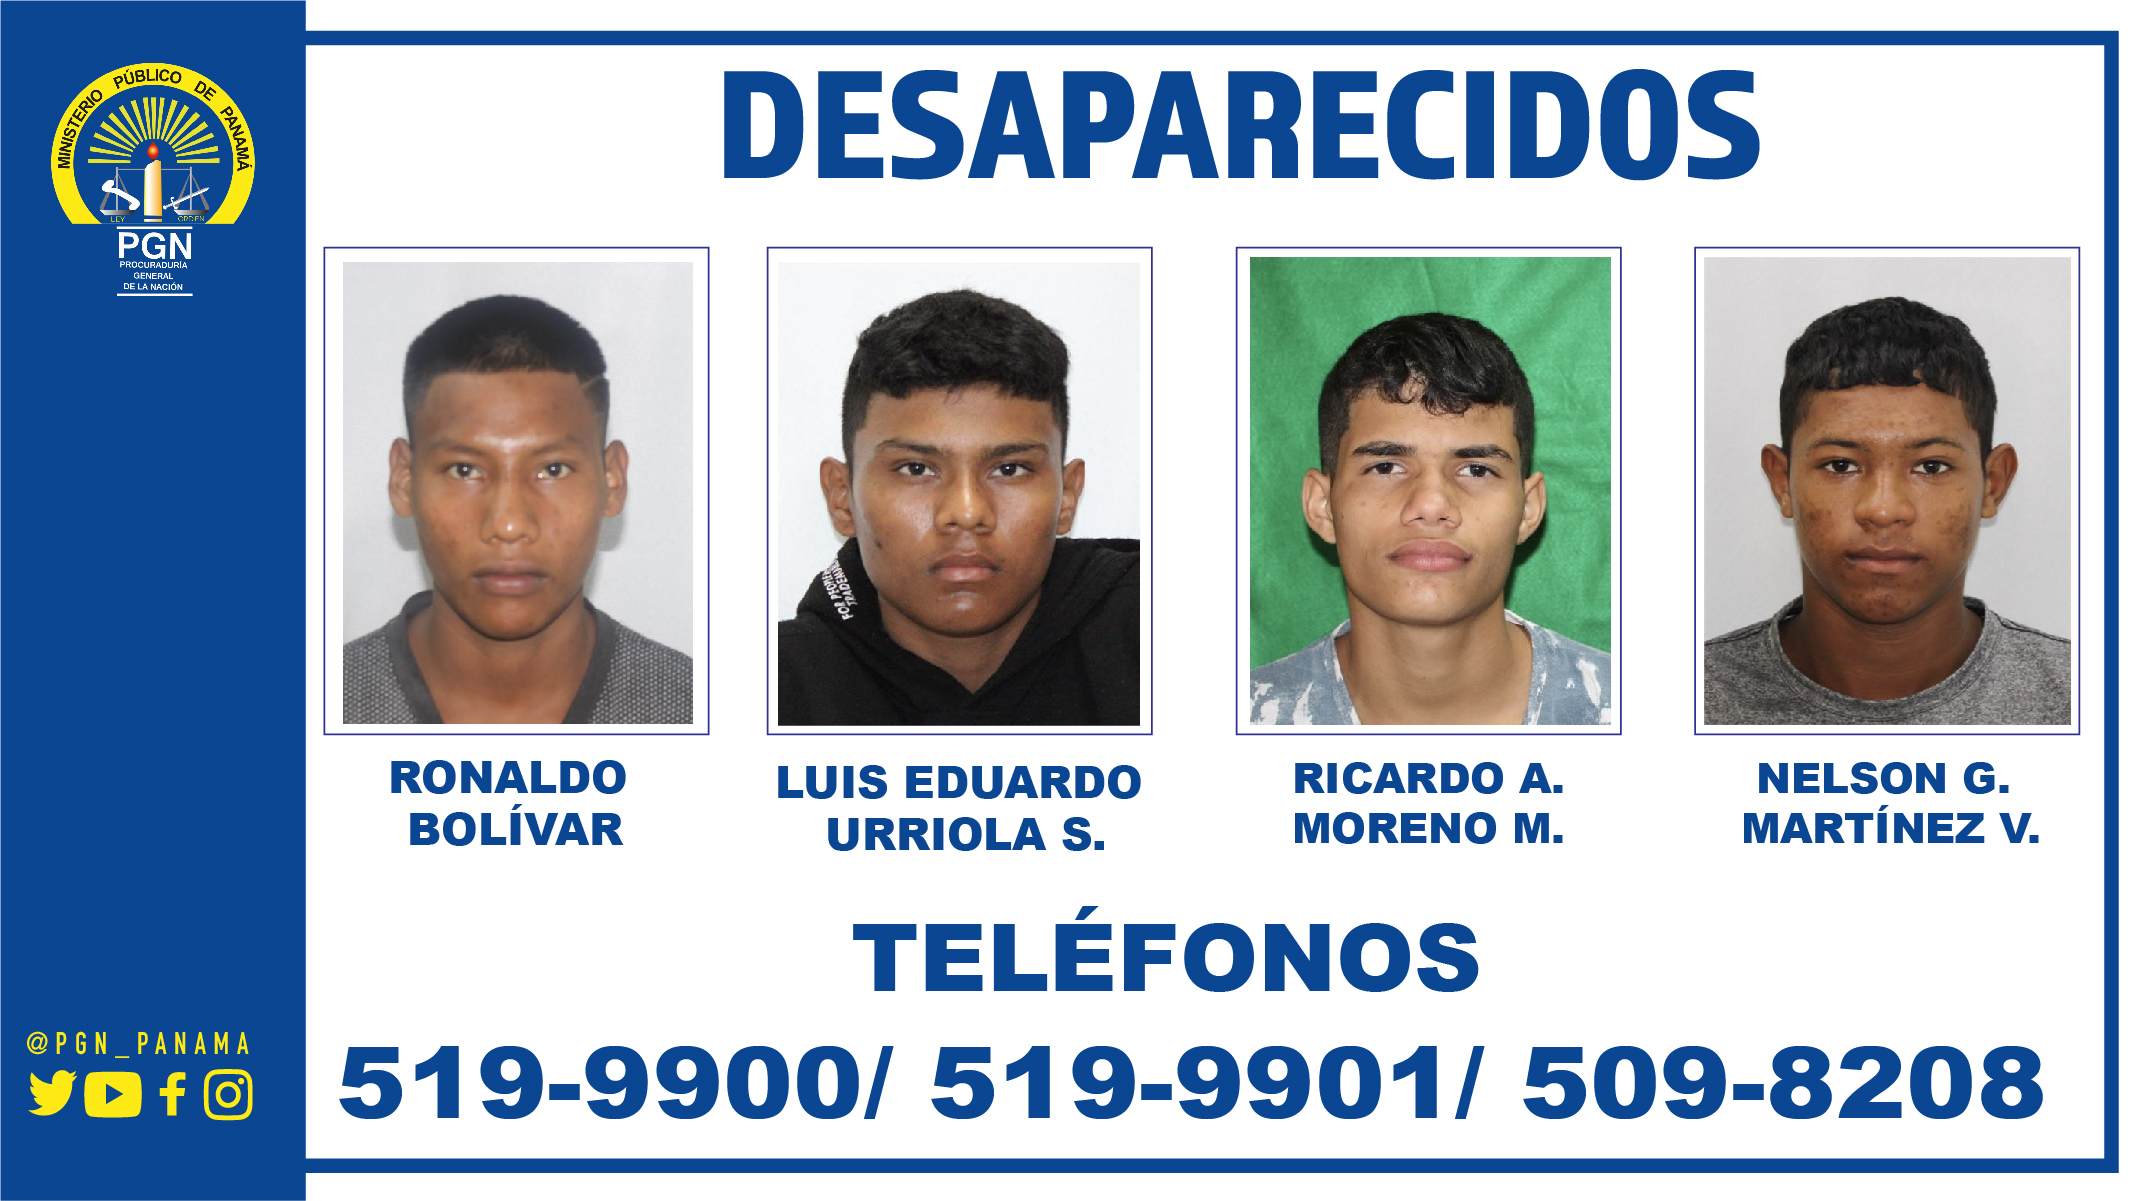 La Subregional de Arraiján solicita colaboración de la ciudadanía para ubicar a cuatro jóvenes desaparecidos